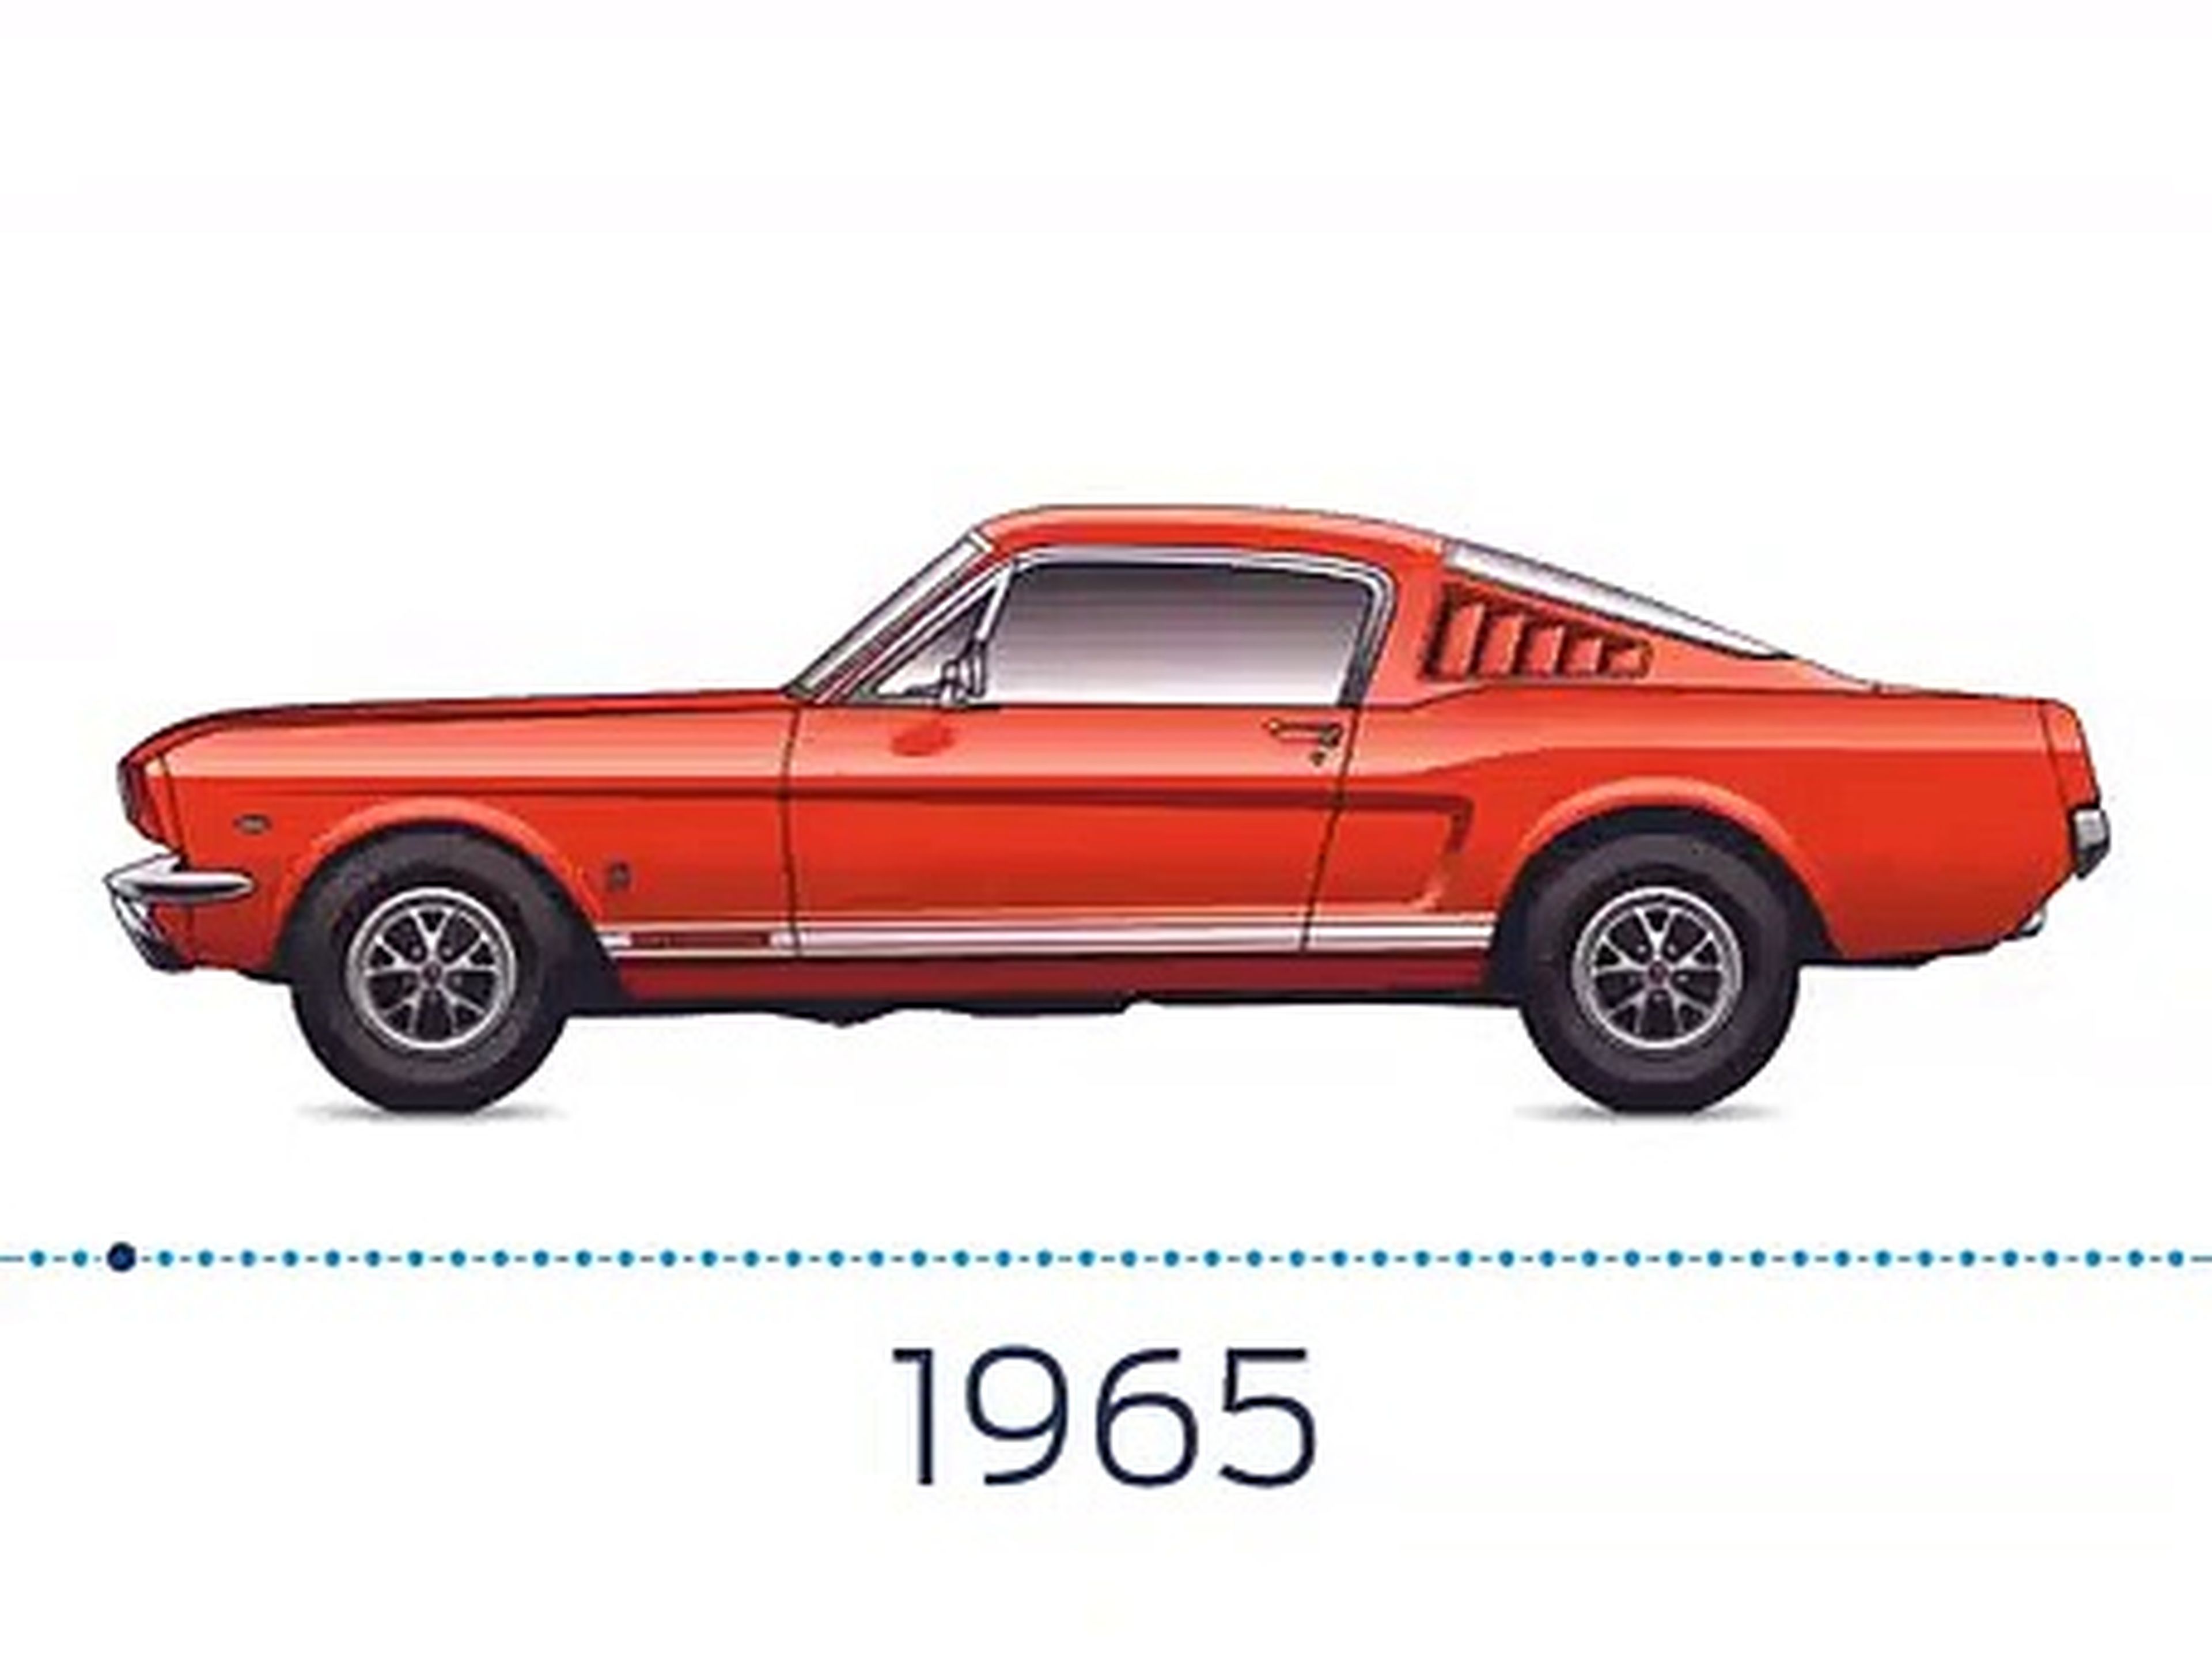 VÍDEO: ¡Lección de historia! Aquí tienes todos los Ford Mustang juntos año a año